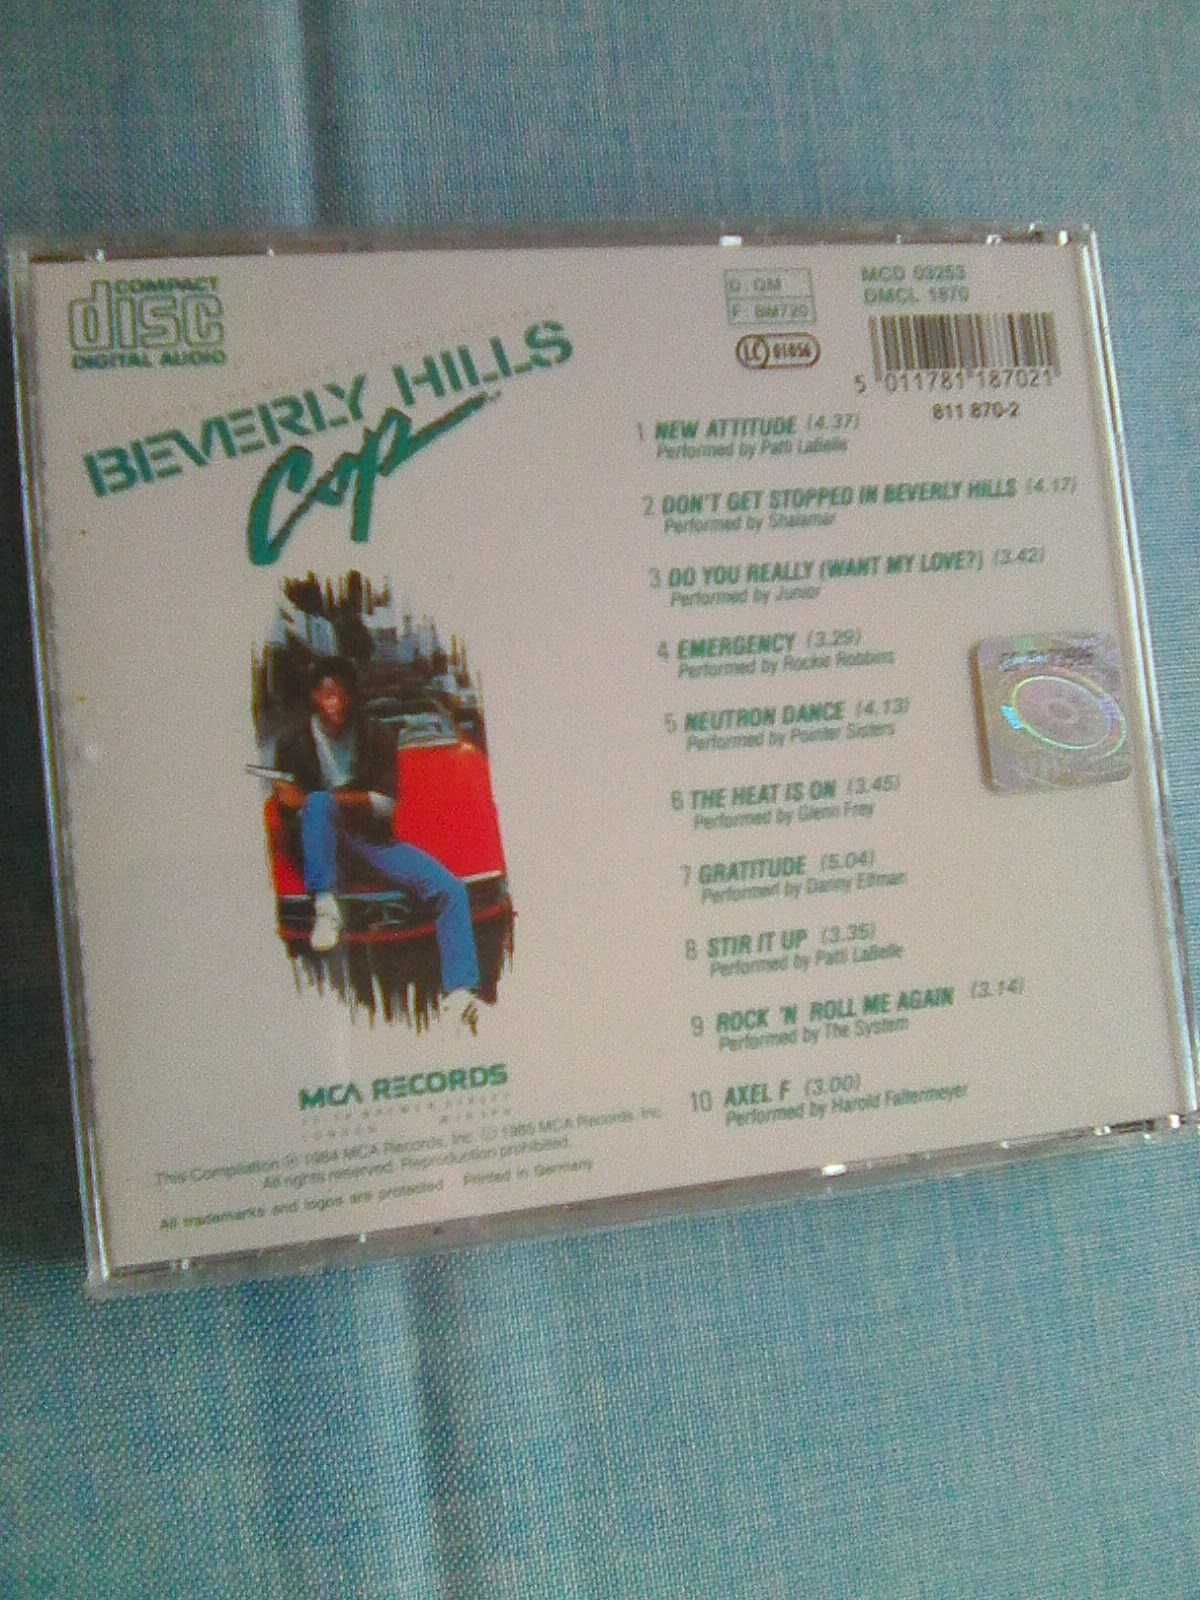 Baverly Hills Cop CD / folia /